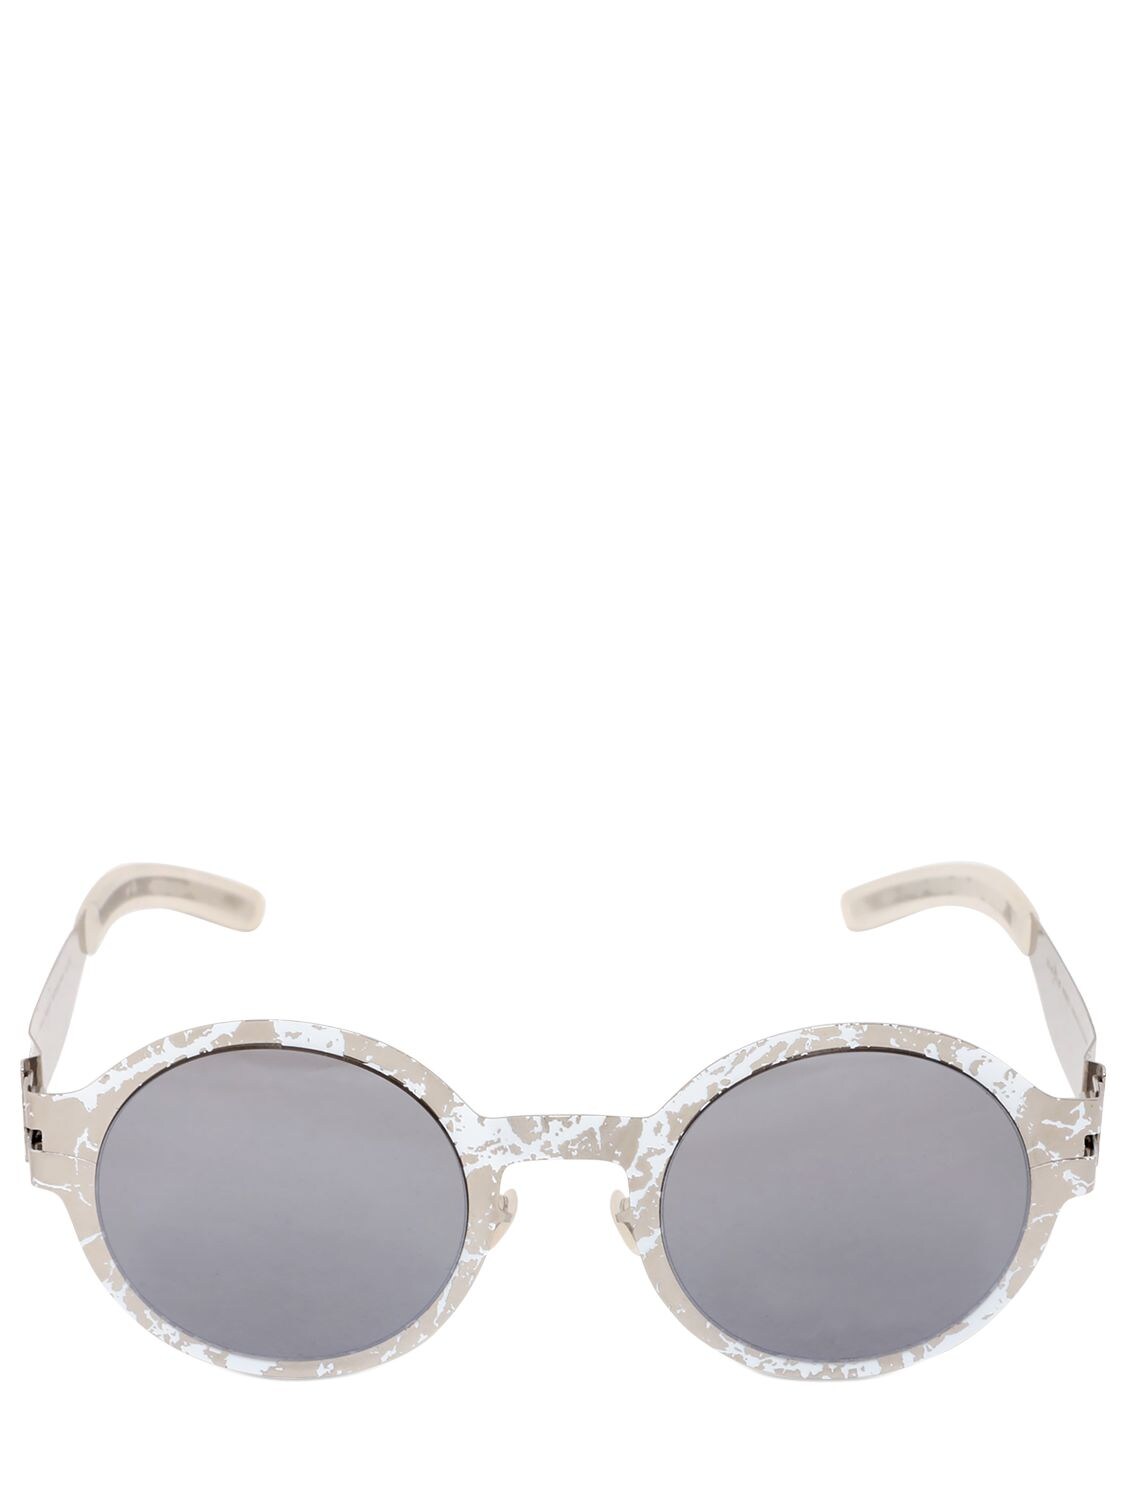 Mykita Maison Margiela Hand-painted Sunglasses In White